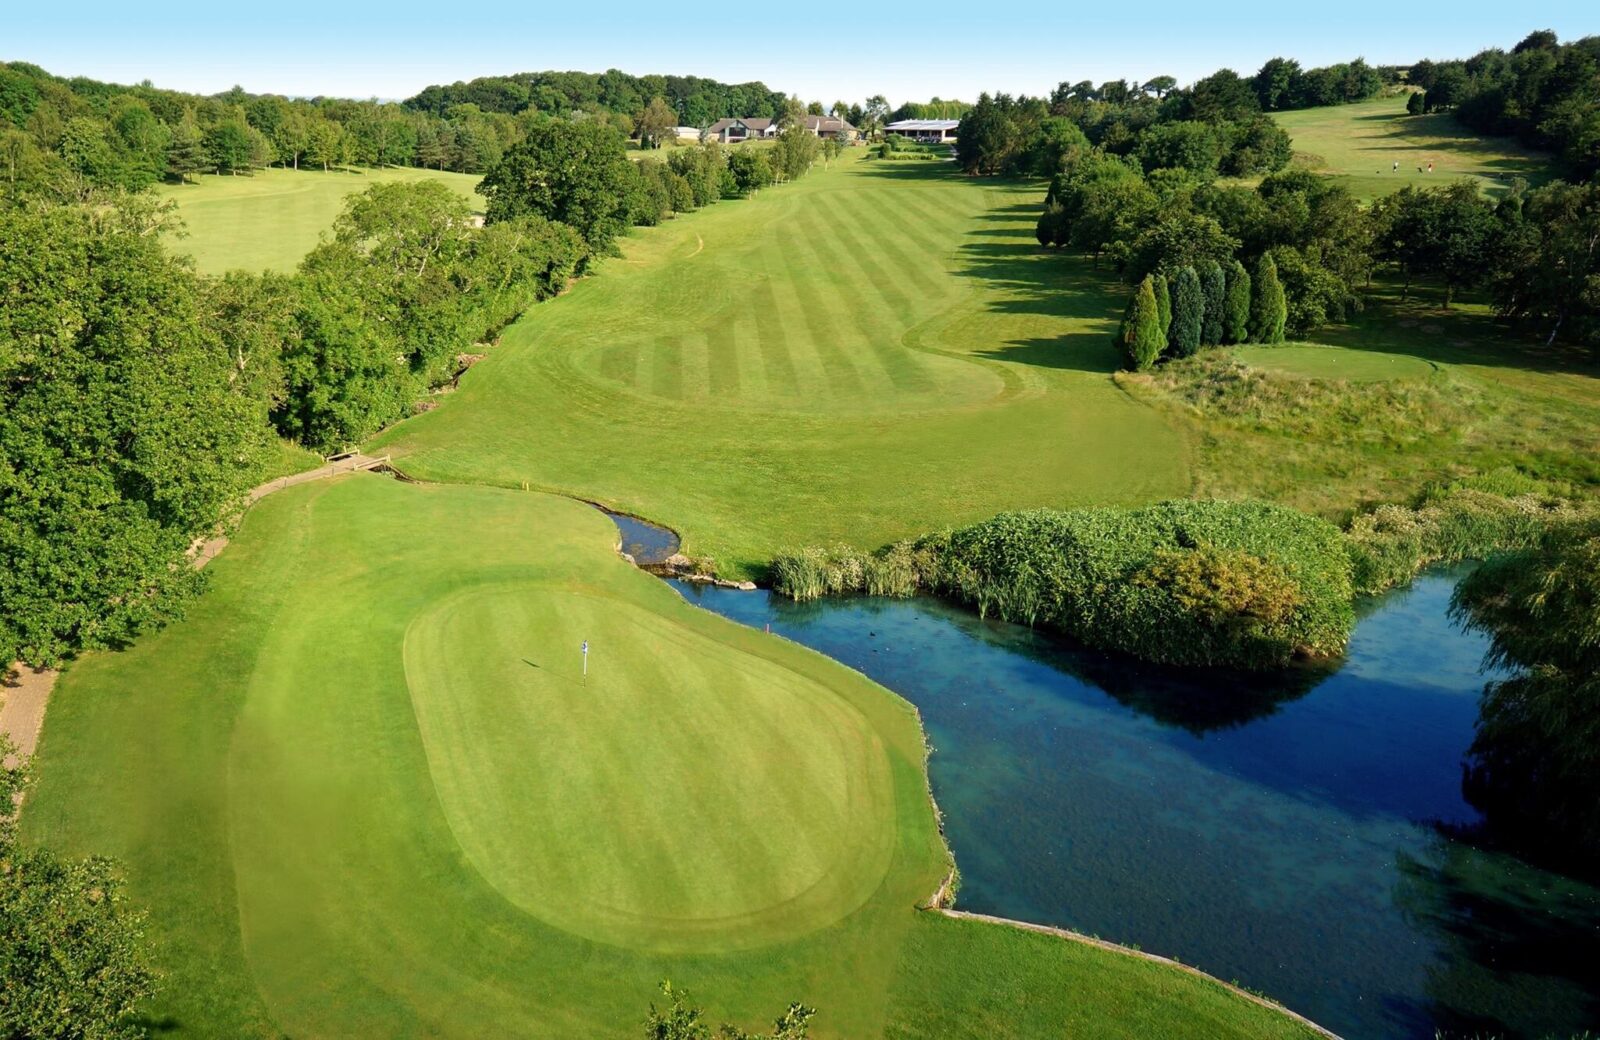 Dainton Golf Course